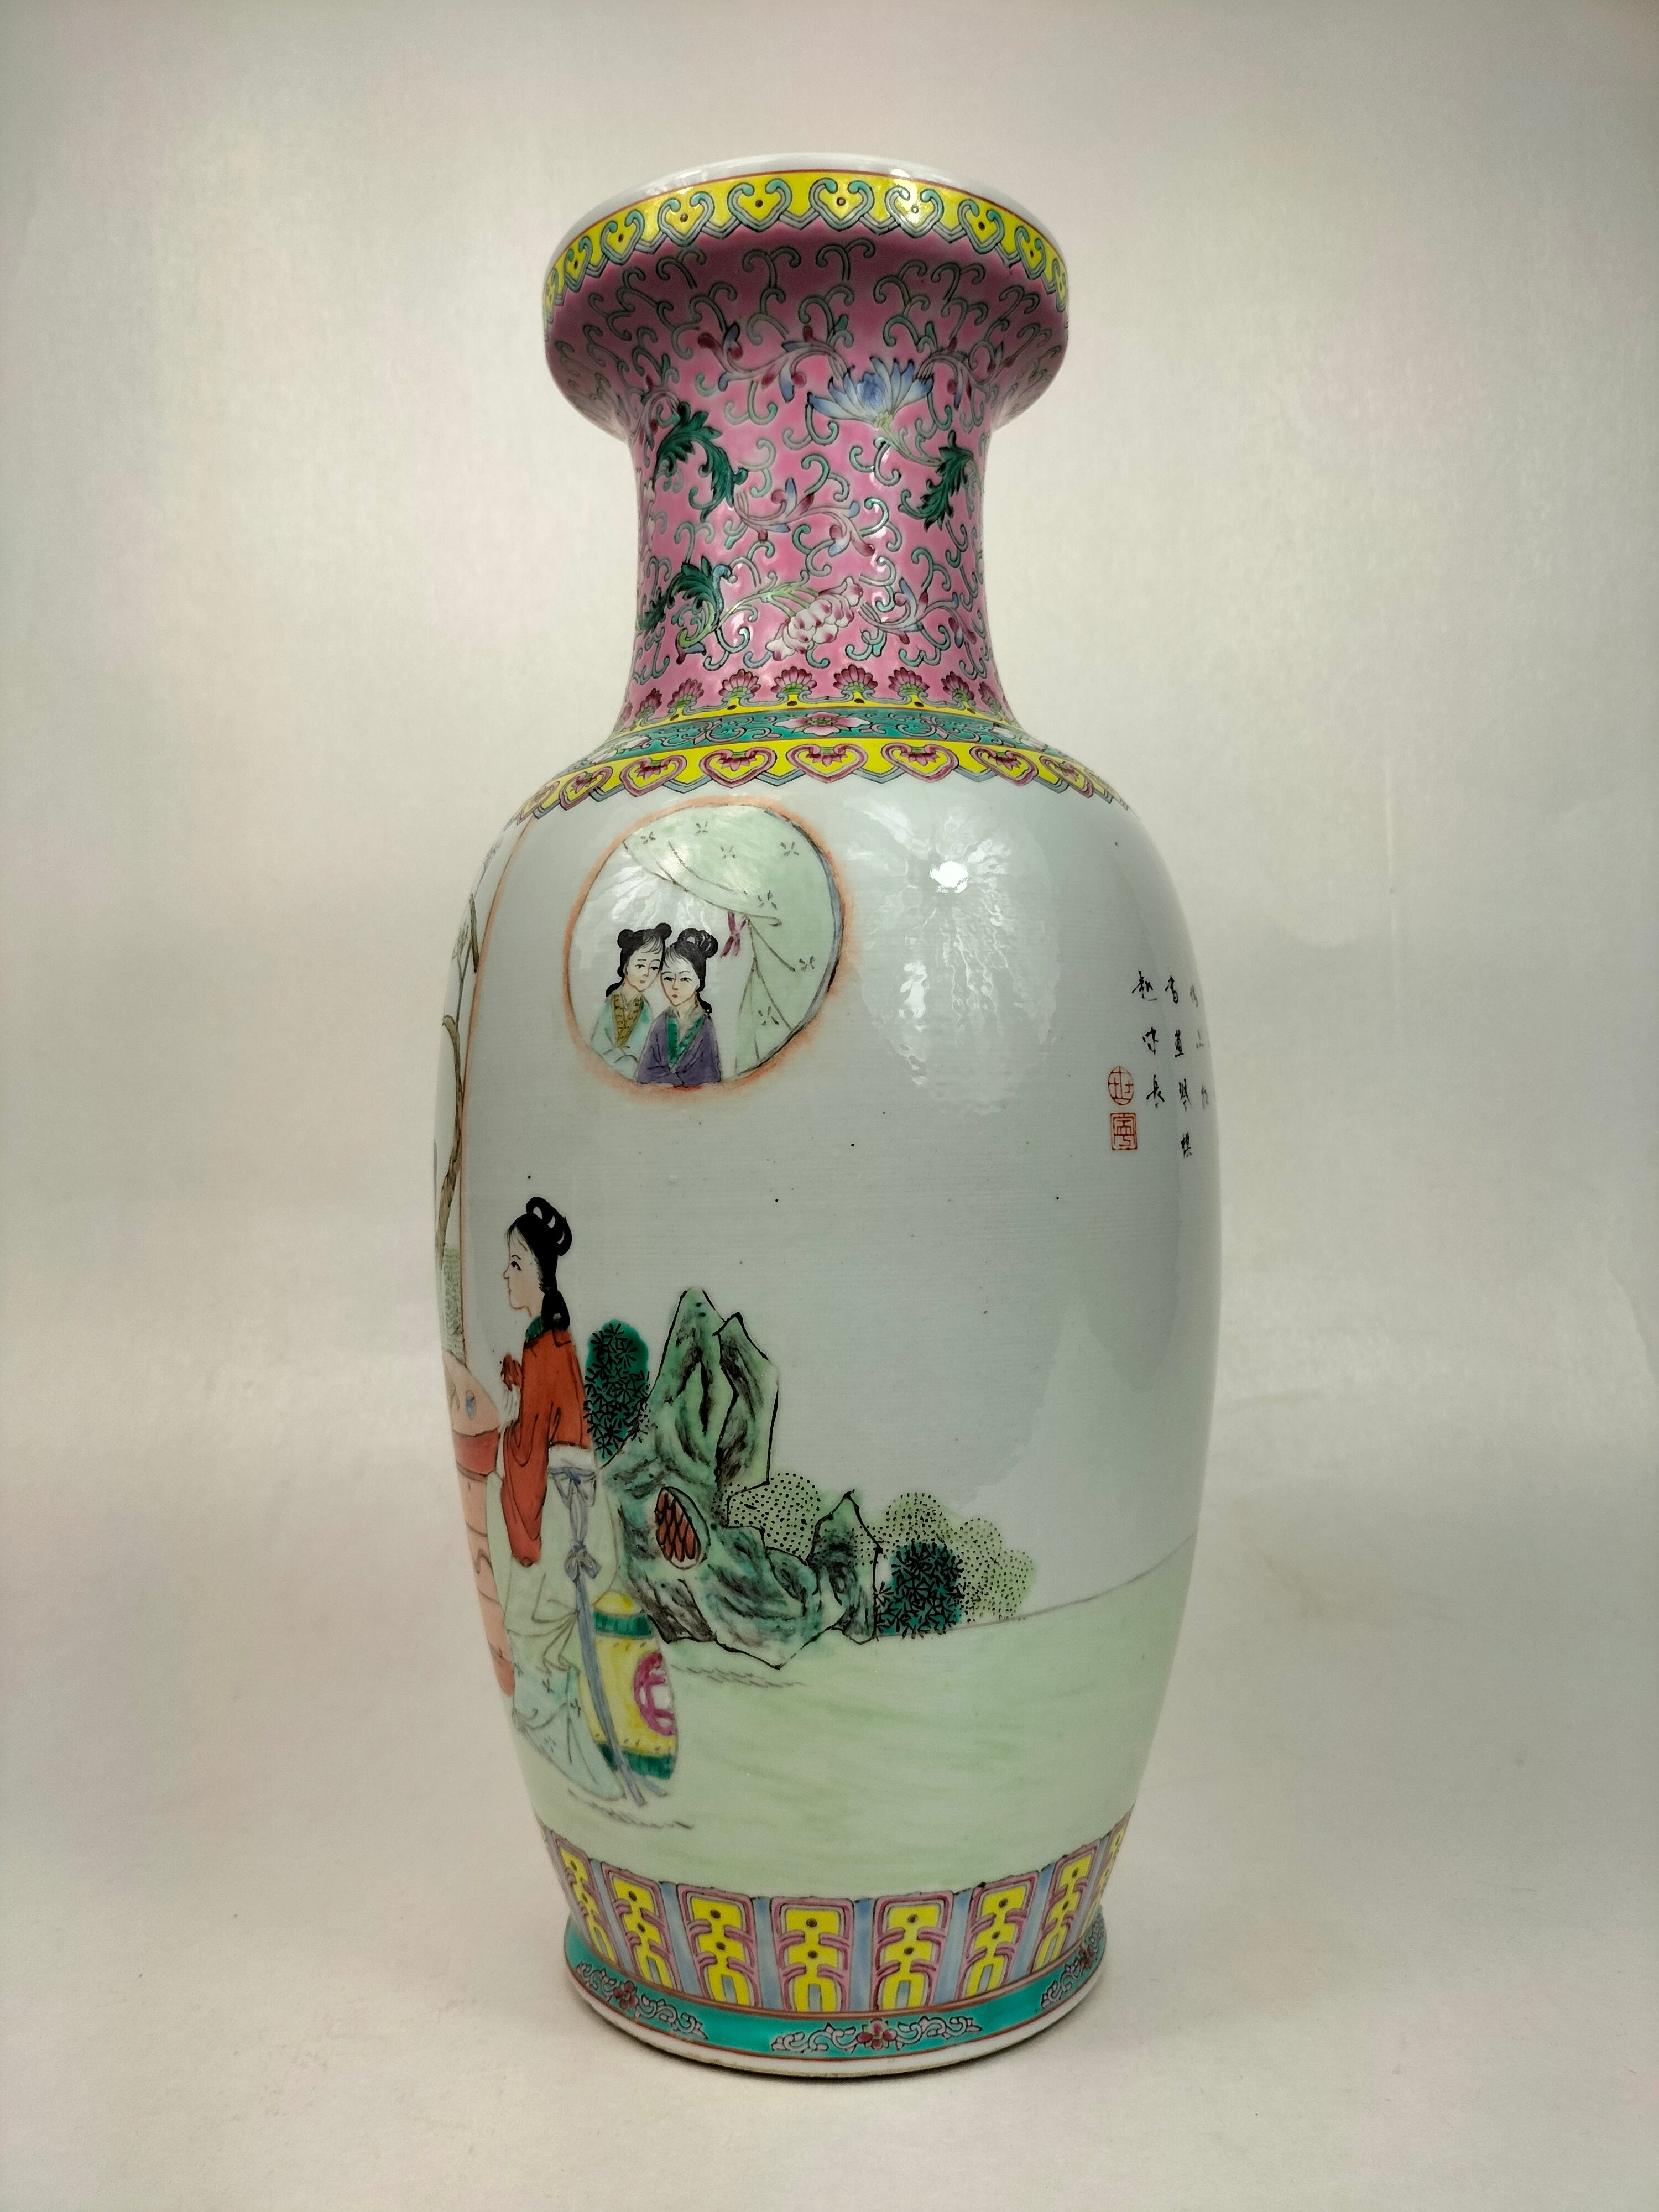 【新座買蔵】中国古玩 花瓶 孔雀画 古い 色絵磁器